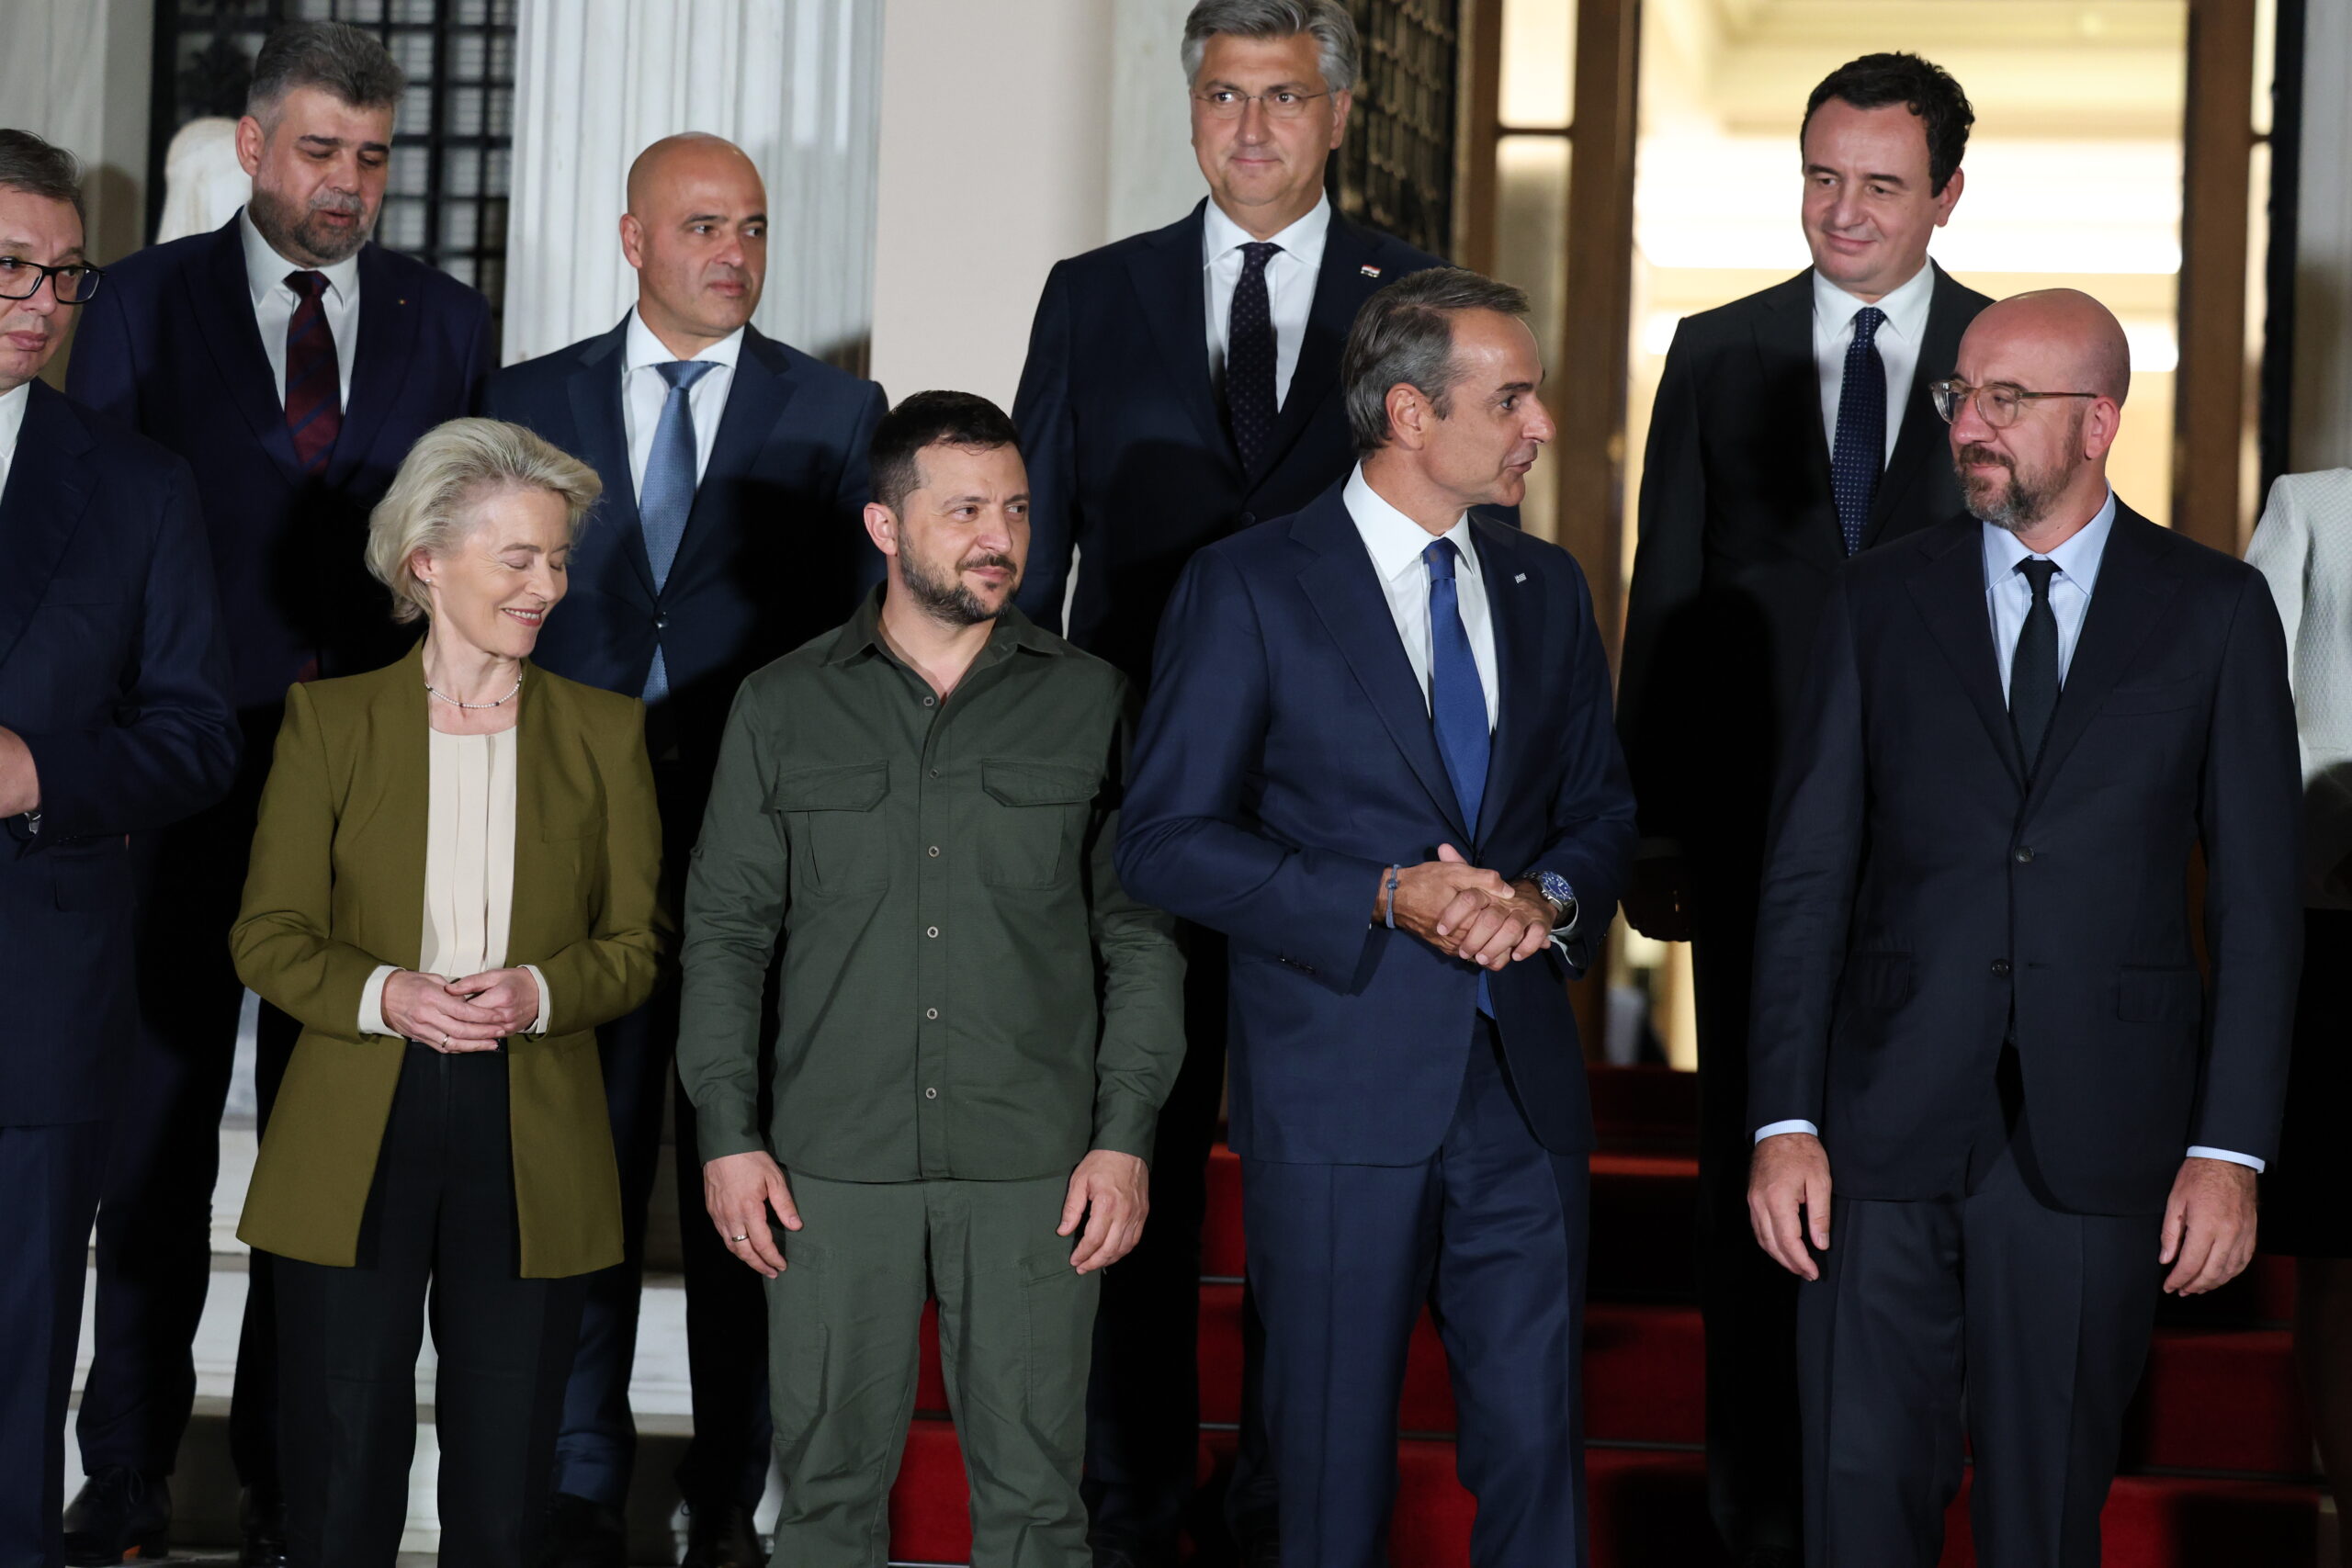 Σ.Μισέλ: Χαίρομαι που συμμετείχα στη συνάντηση με τους Προέδρους Ζελένσκι, Σαντού και τους ηγέτες των Δυτικών Βαλκανίων